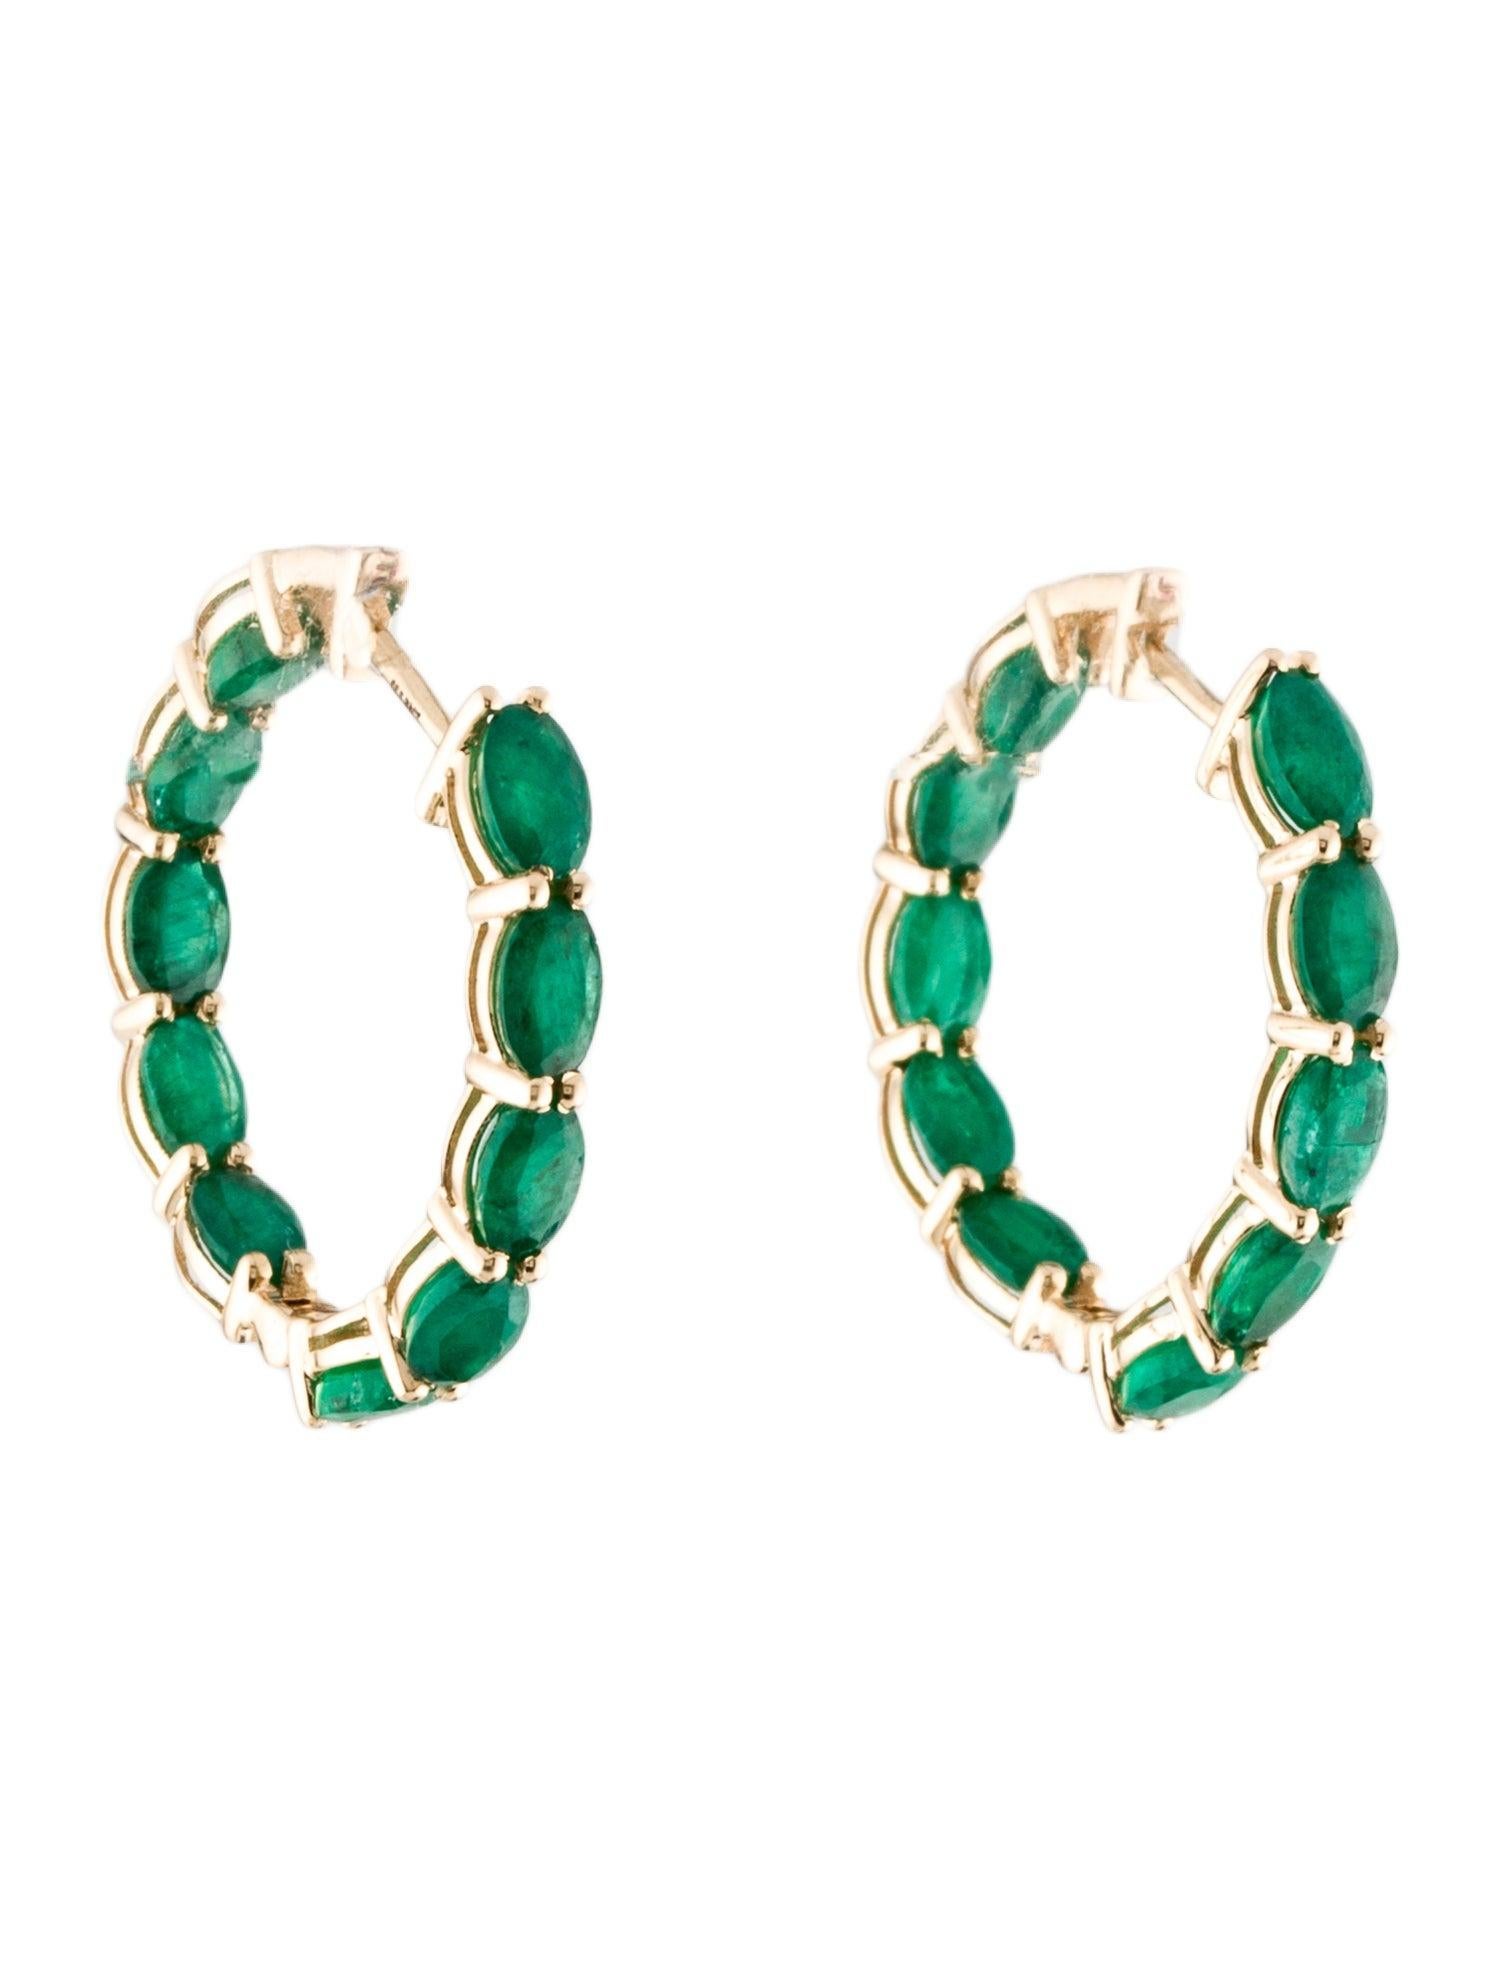 Wir präsentieren unsere atemberaubenden 14K Yellow Gold Emerald Inside-Outside Hoop Earrings, ein Muss für jeden Schmuckliebhaber. Diese exquisiten Ohrringe bestehen aus 20 ovalen, modifizierten Brillantsmaragden, die aufgrund ihres tiefgrünen